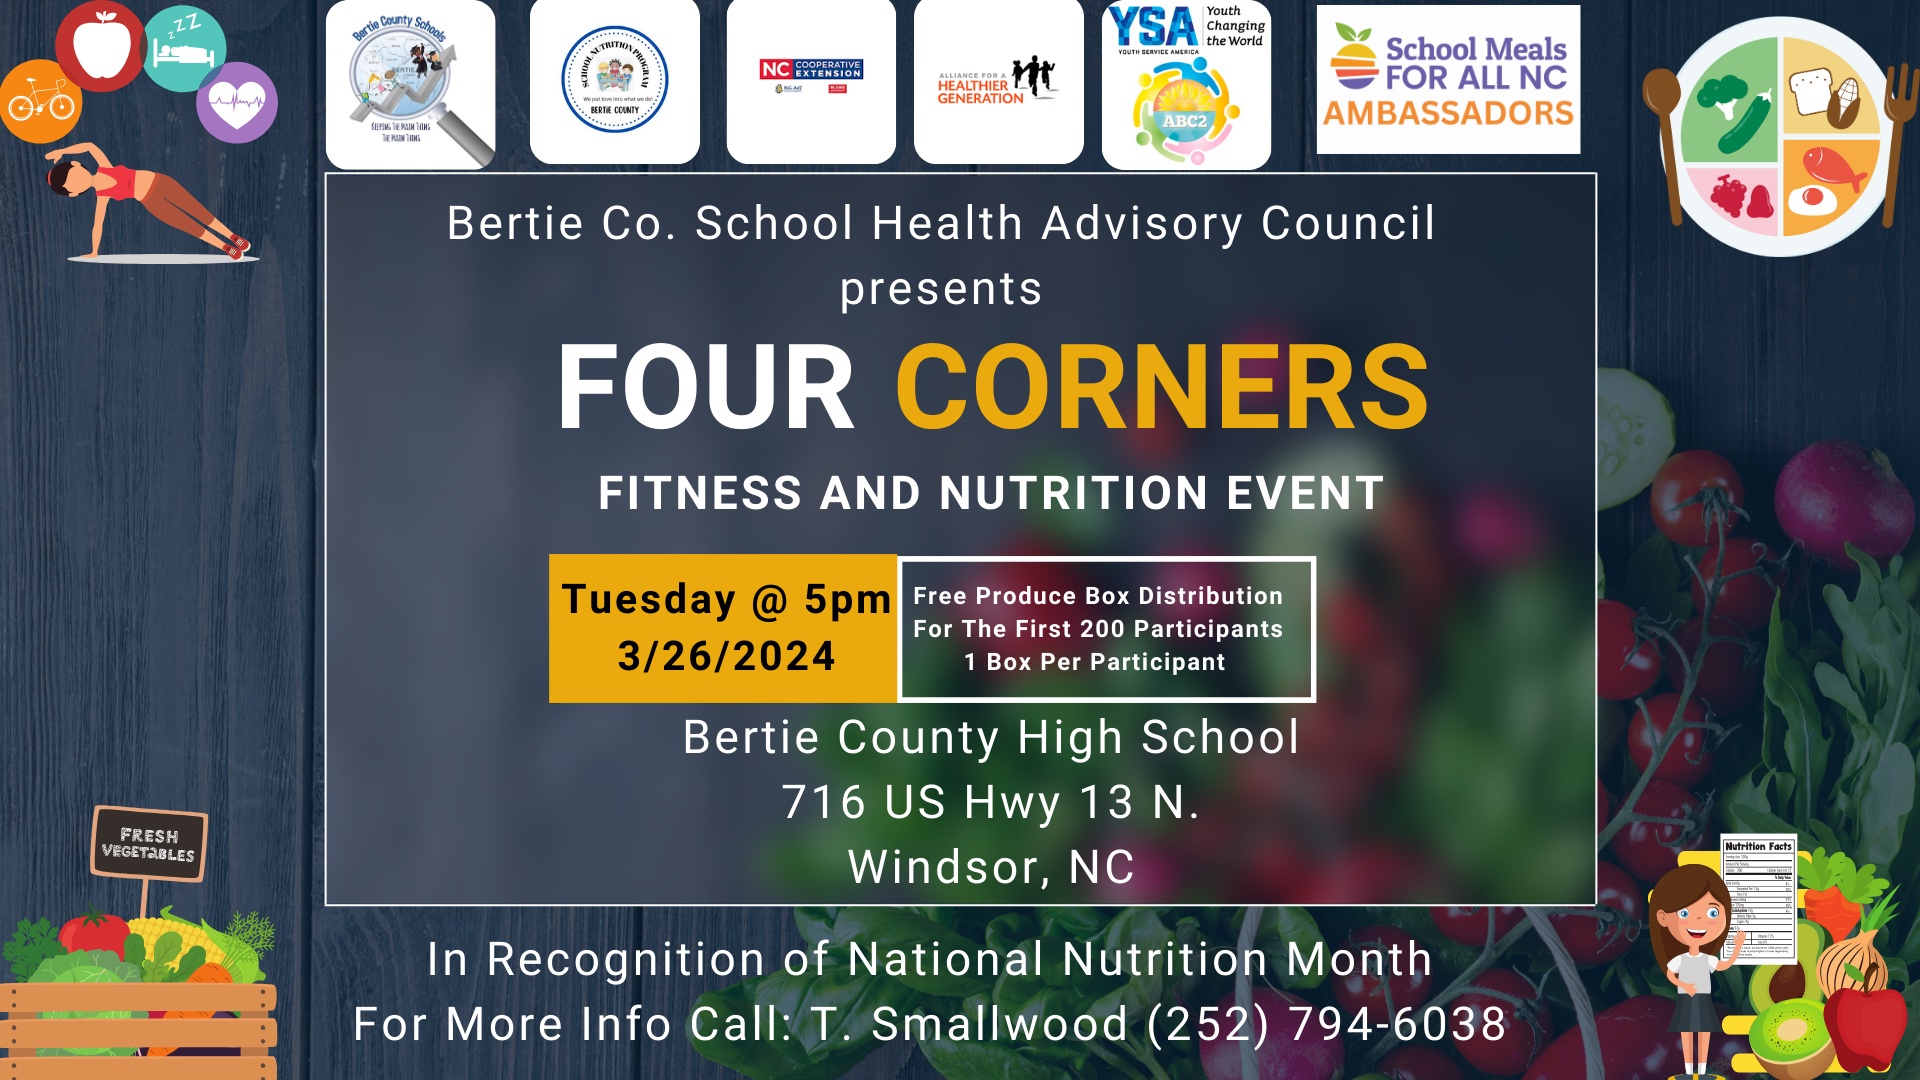 Bertie County Schools Nutrition event flyer